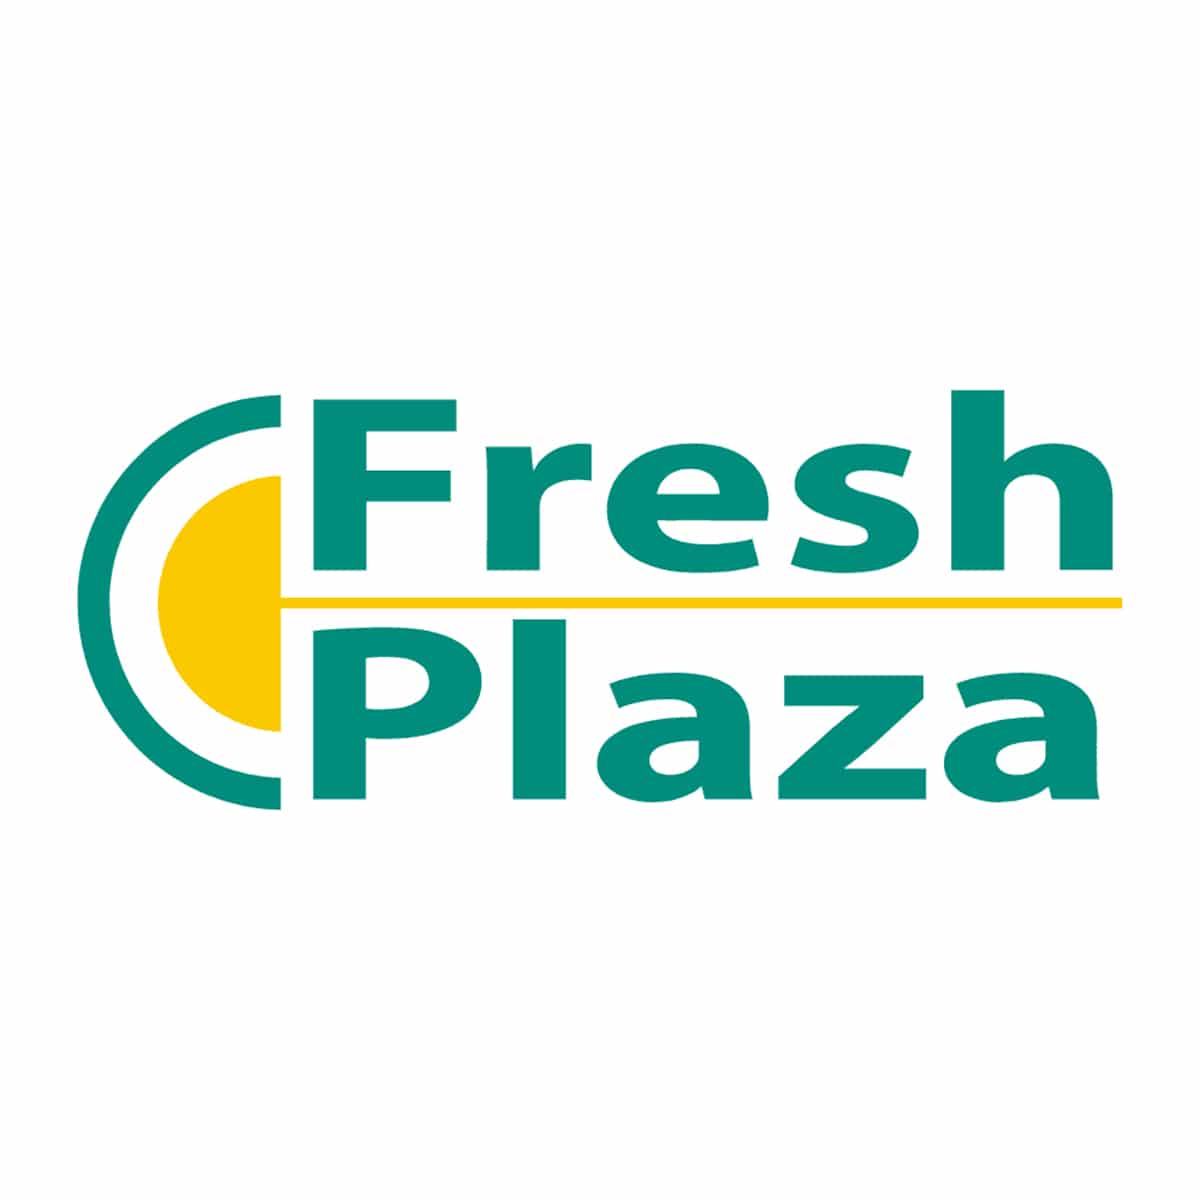 fresh plaza logo